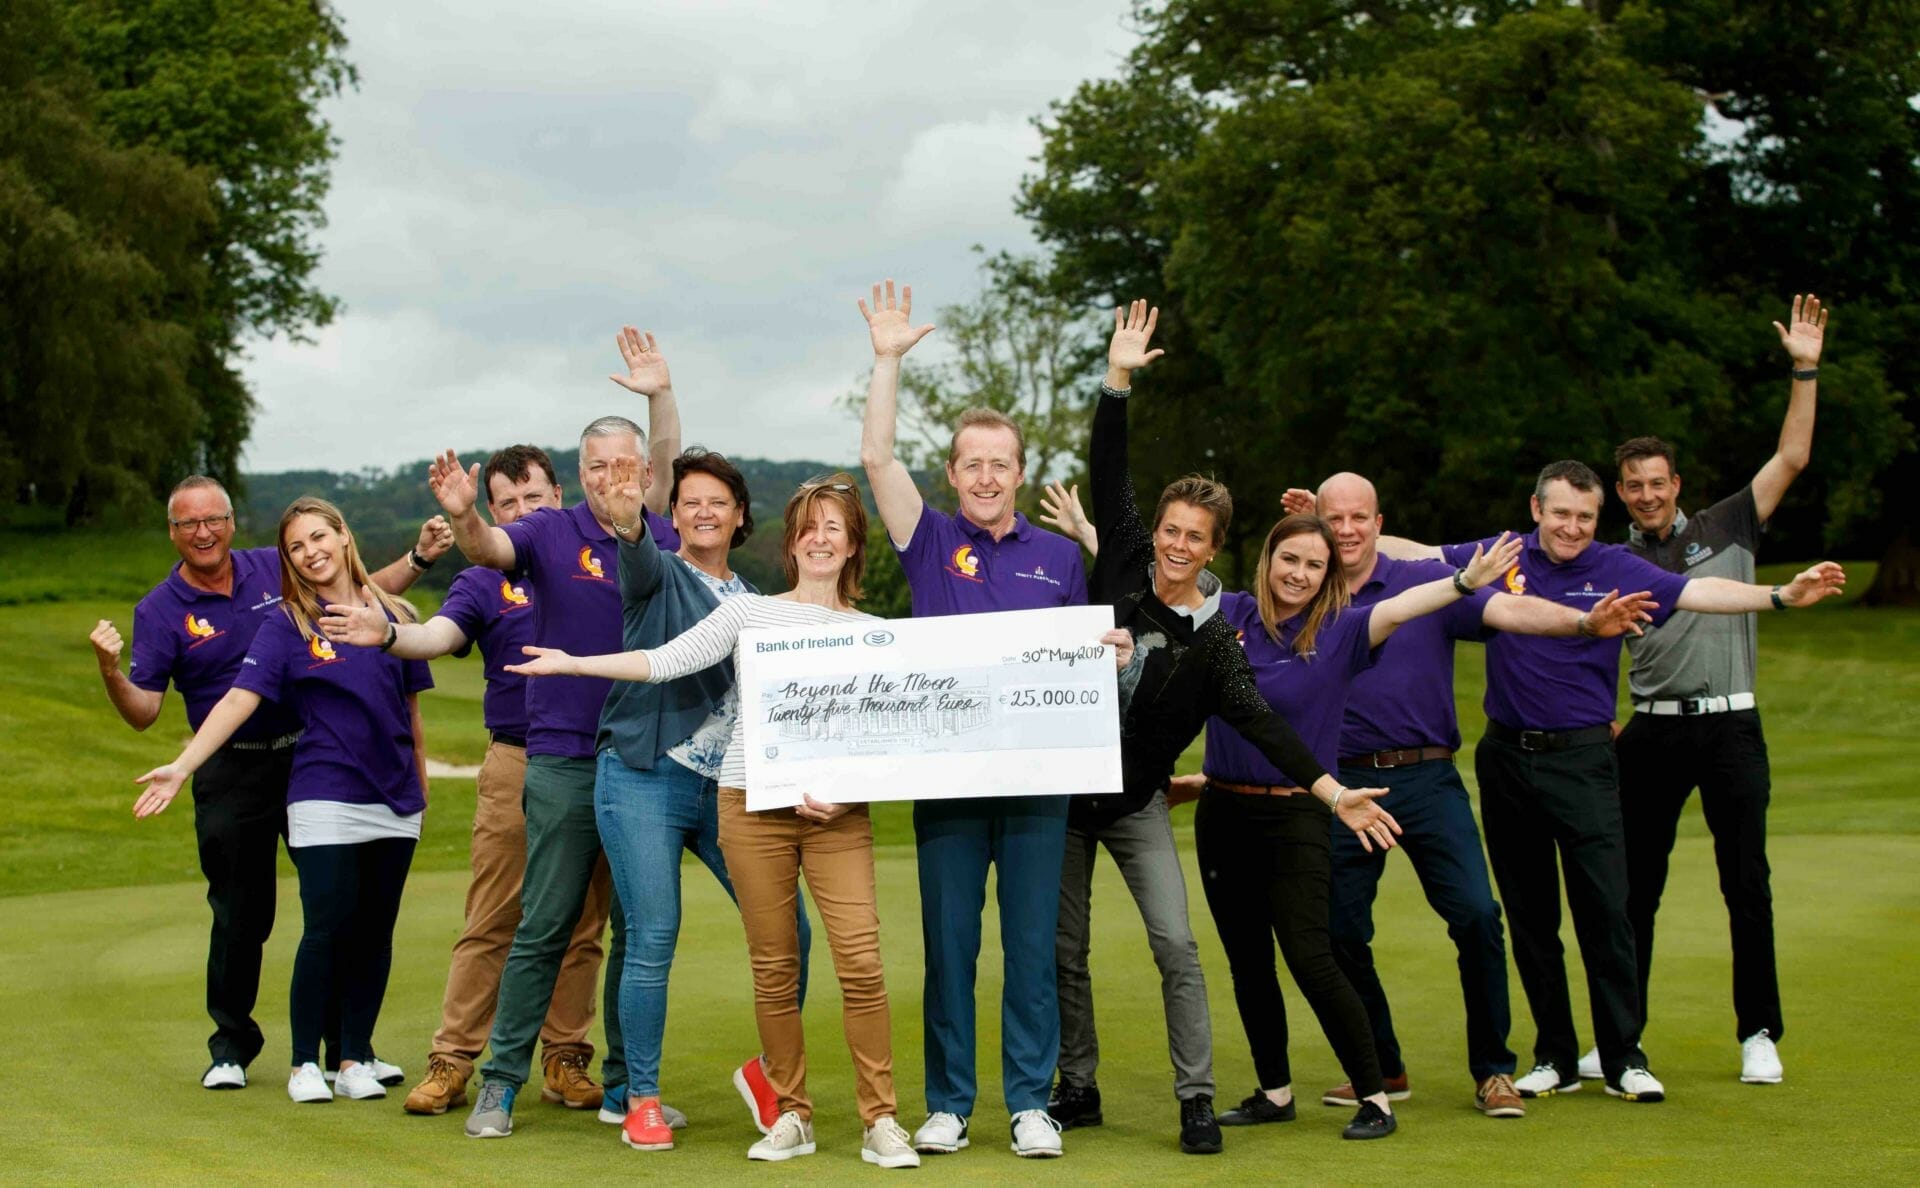 Prem Group raises €25,000 for Children’s Charity at Tulfarris golf day